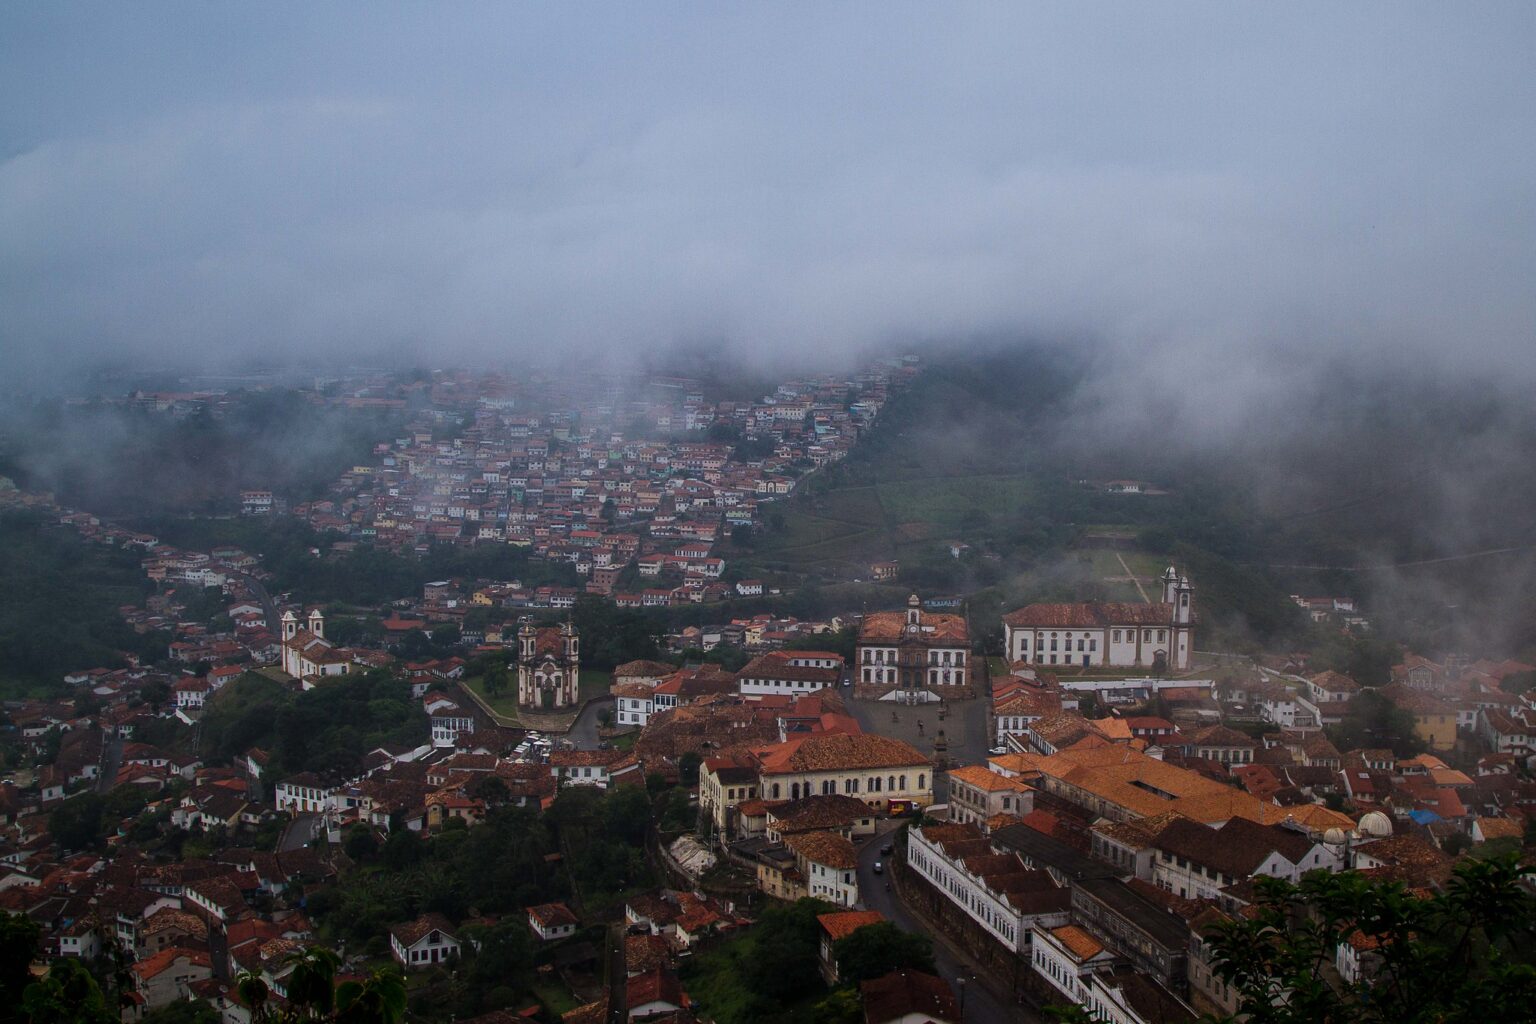 Visite Minas Gerais no inverno: um paraíso brasileiro